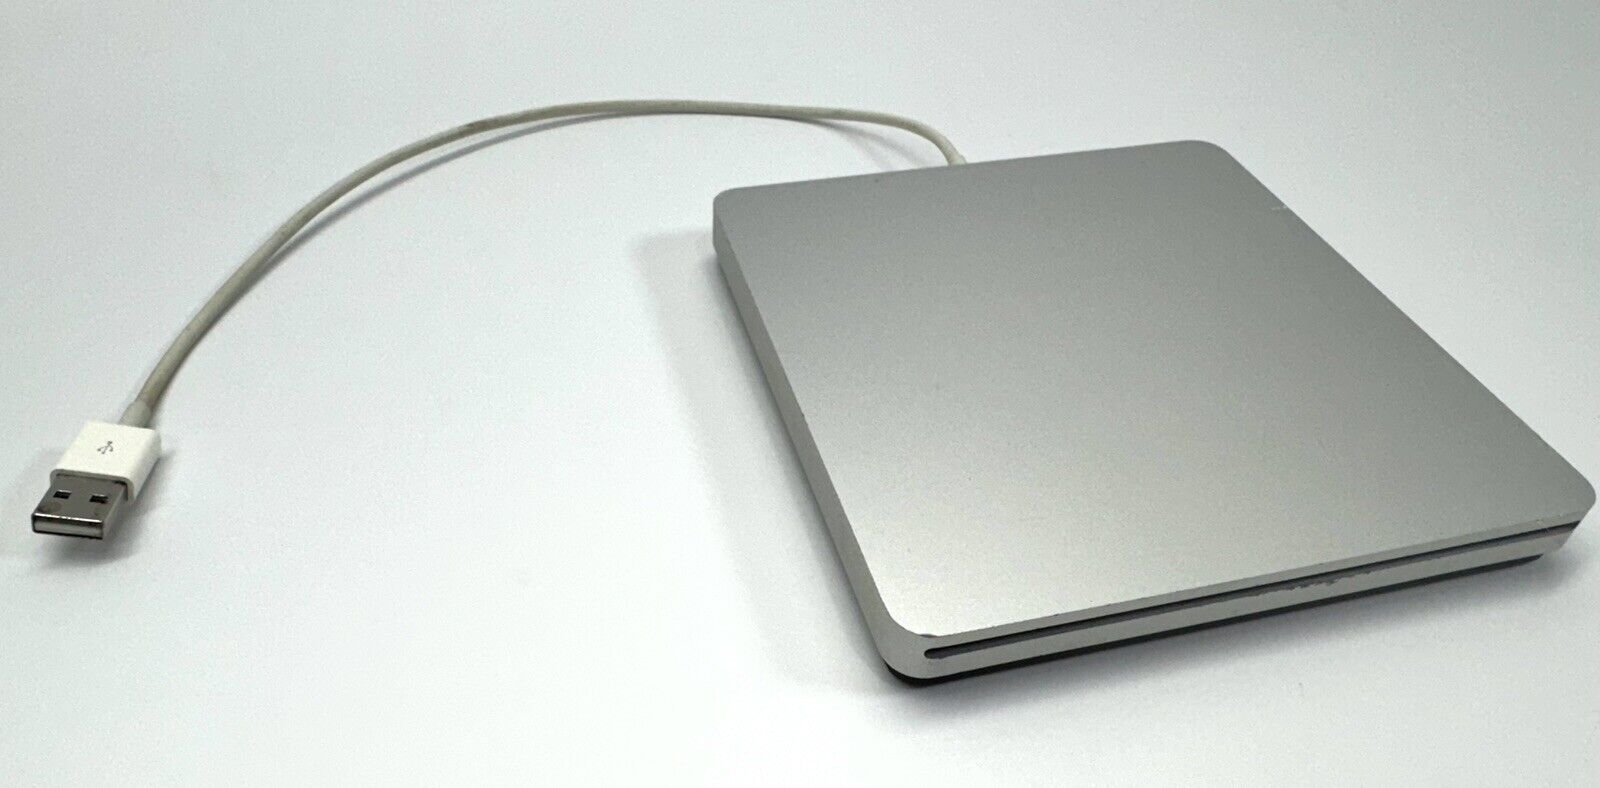 Apple USB SuperDrive (A1379) Silver External Drive, CD, DVD